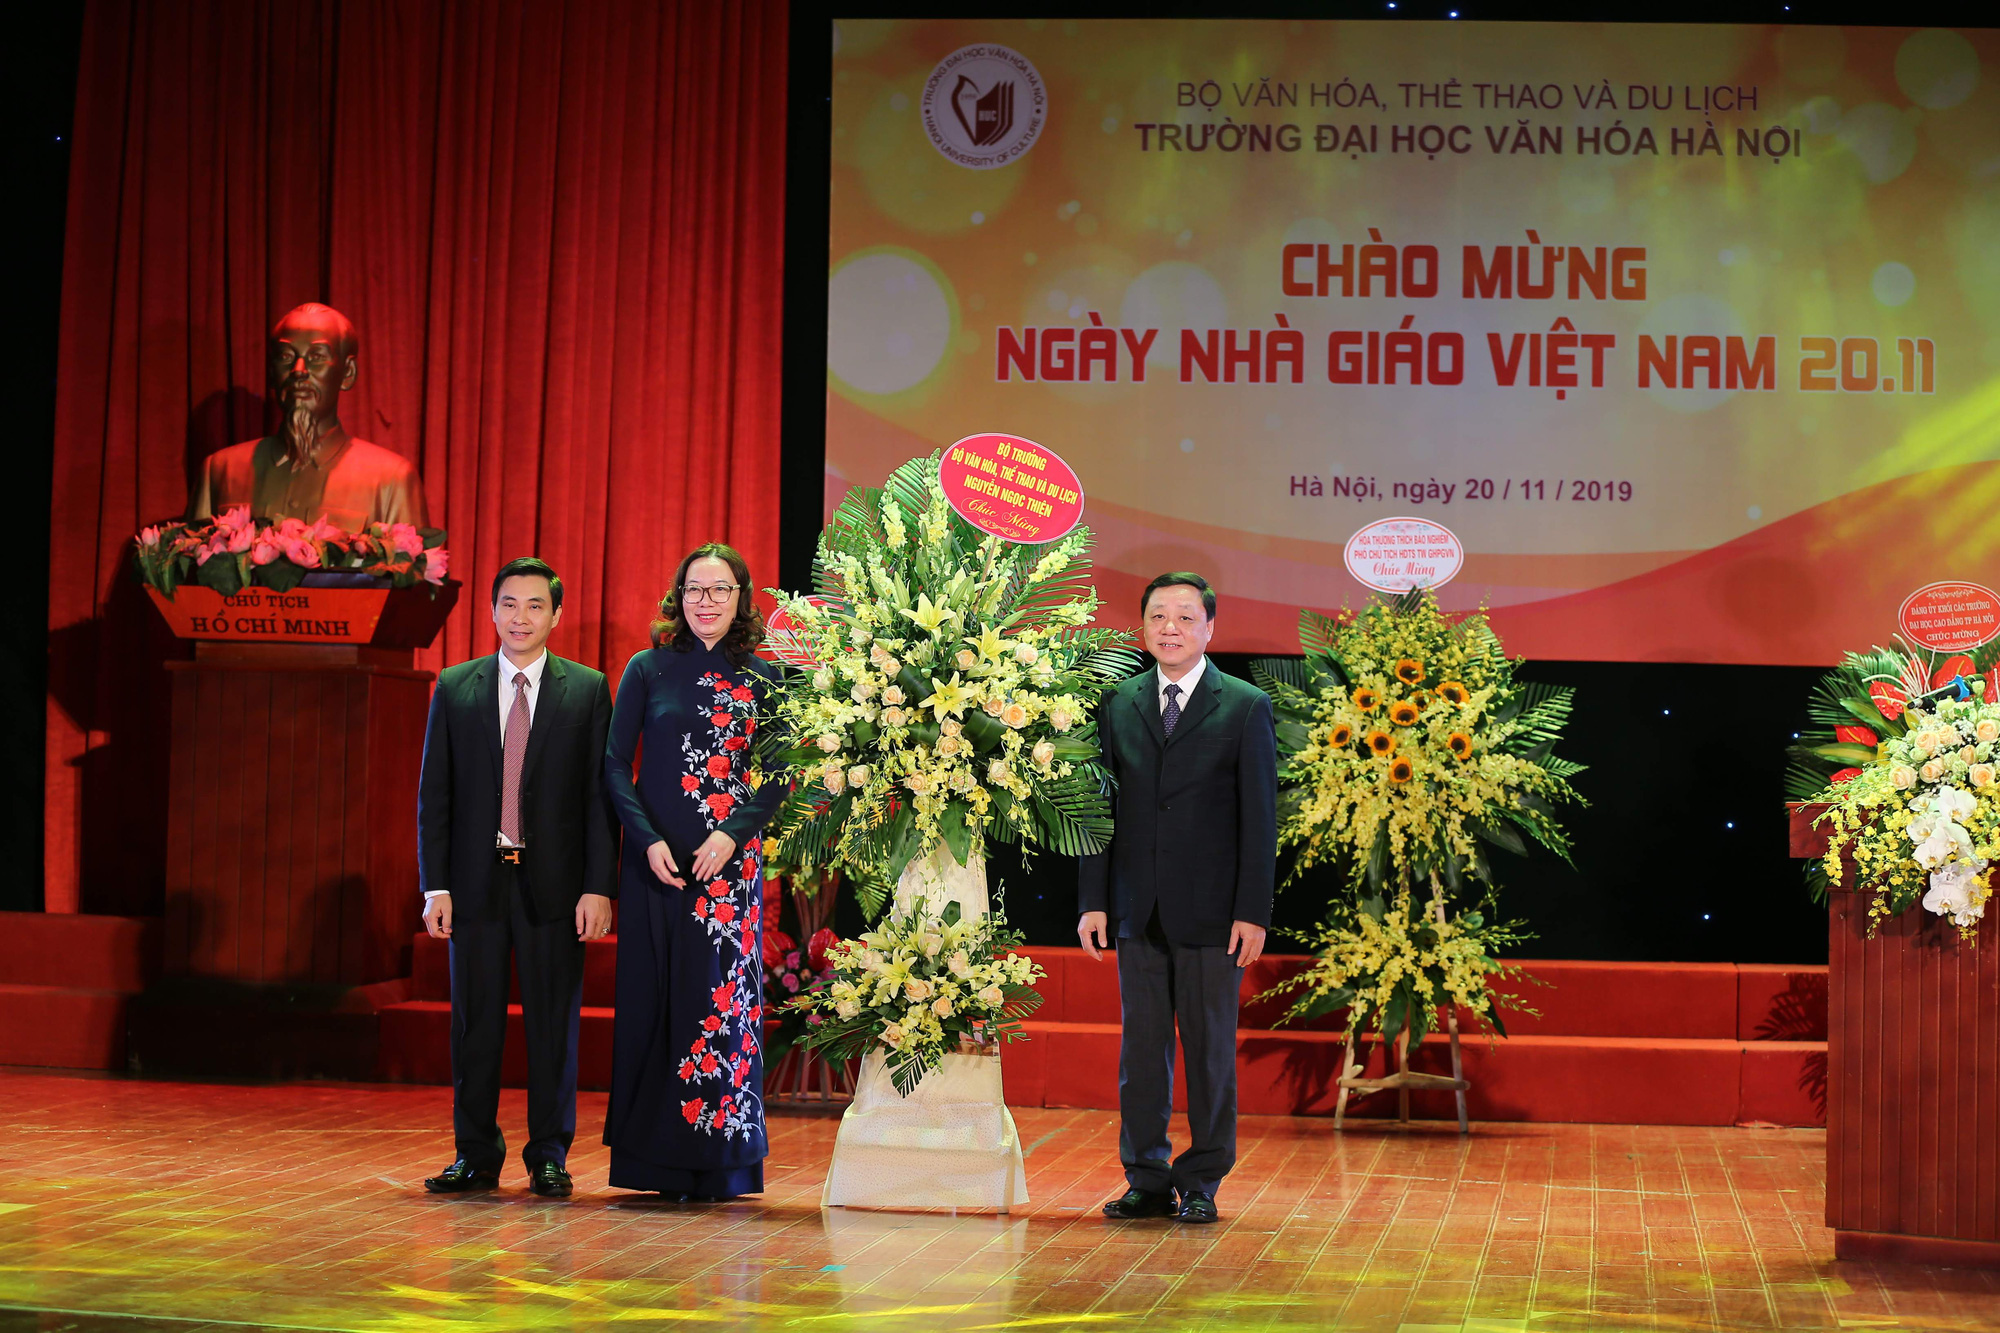 Trường Đại học Văn hóa Hà Nội long trọng kỷ niệm Ngày Nhà giáo Việt Nam  - Ảnh 3.